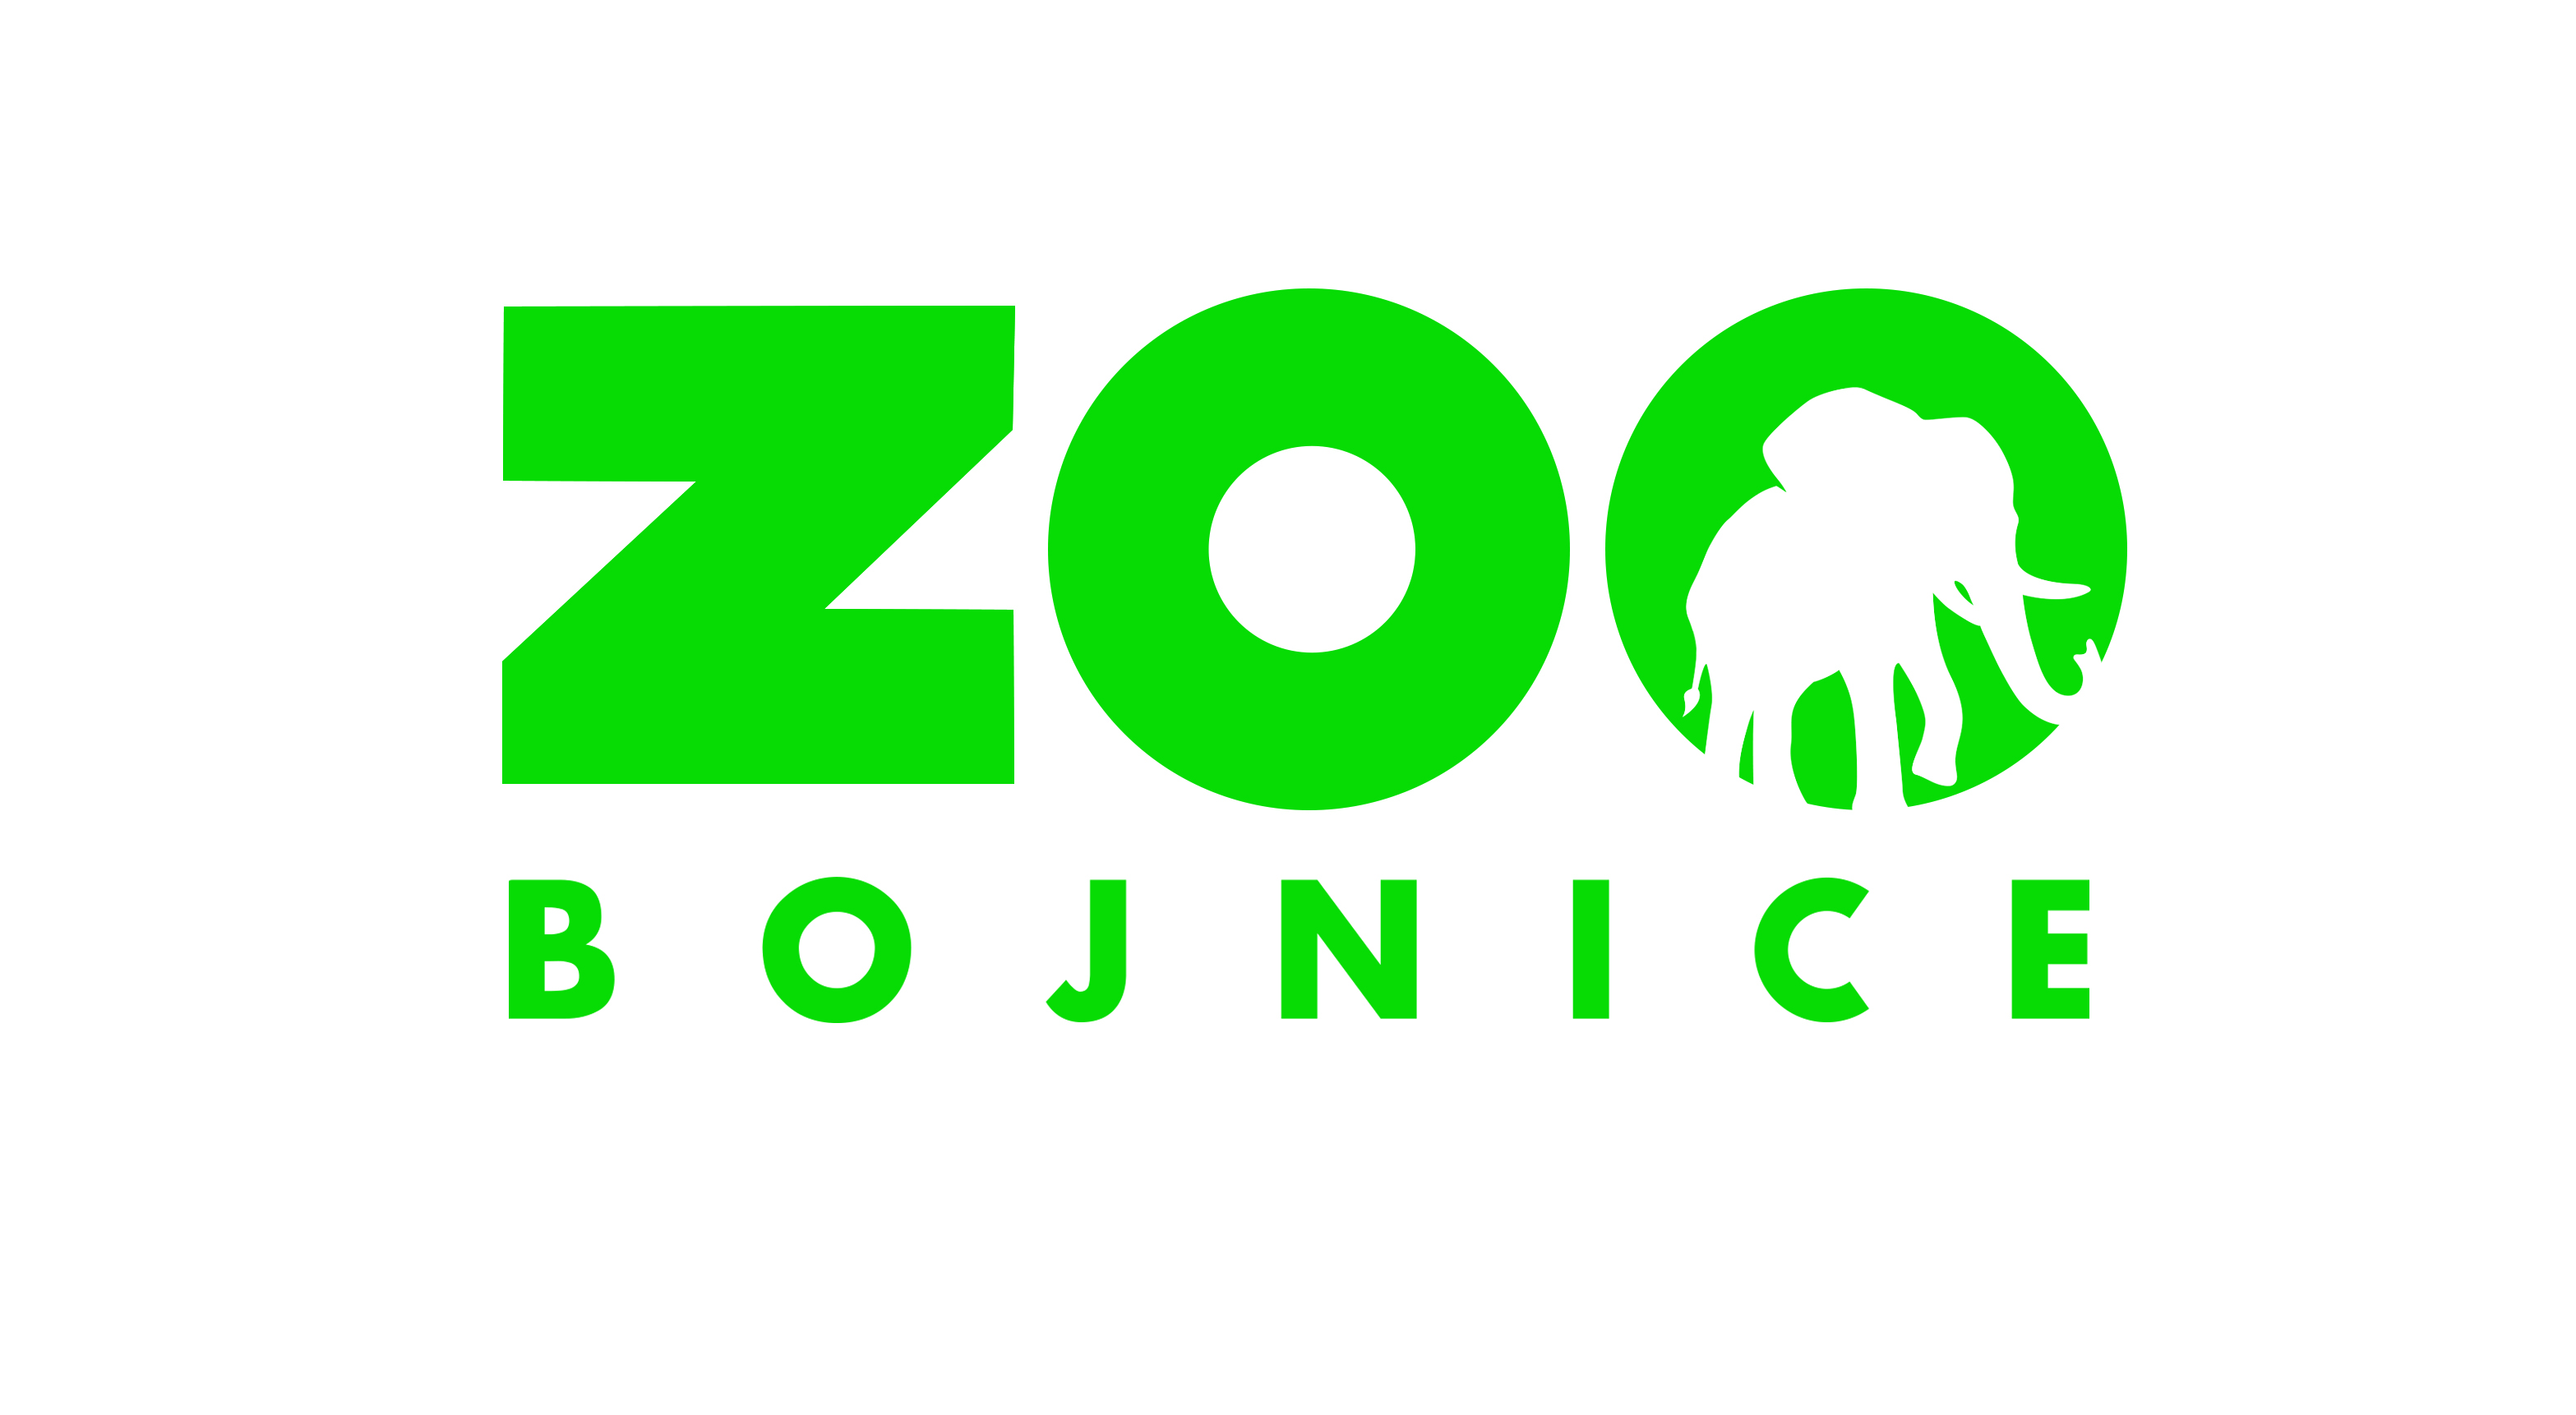 Národná zoo Bojnice mení dočasne logo - vyjadrujú podporu Svetovej zdravotníckej organizácii (WHO)